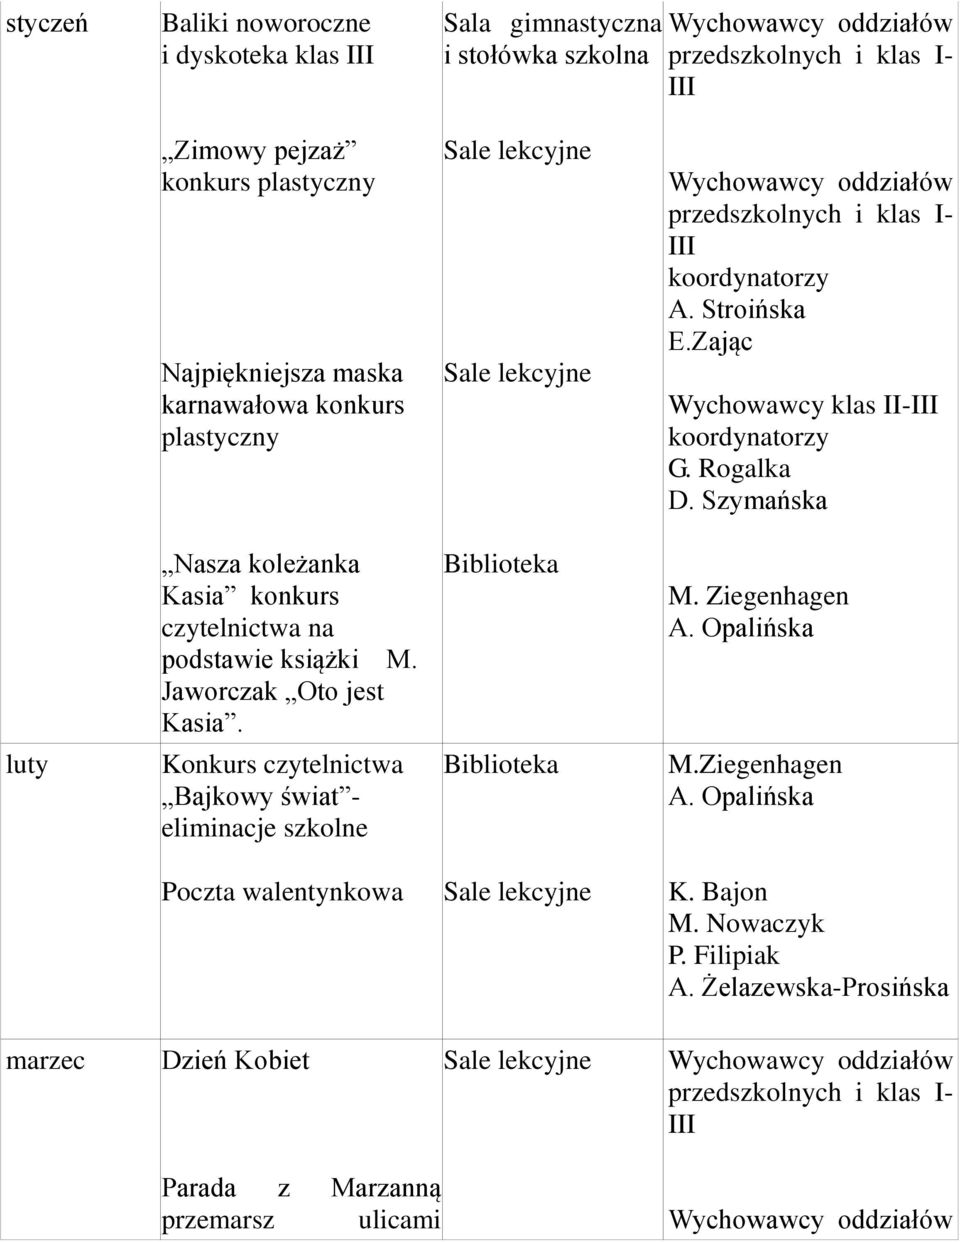 Szymańska Nasza koleżanka Kasia konkurs czytelnictwa na podstawie książki M. Jaworczak Oto jest Kasia. Biblioteka M. Ziegenhagen A.